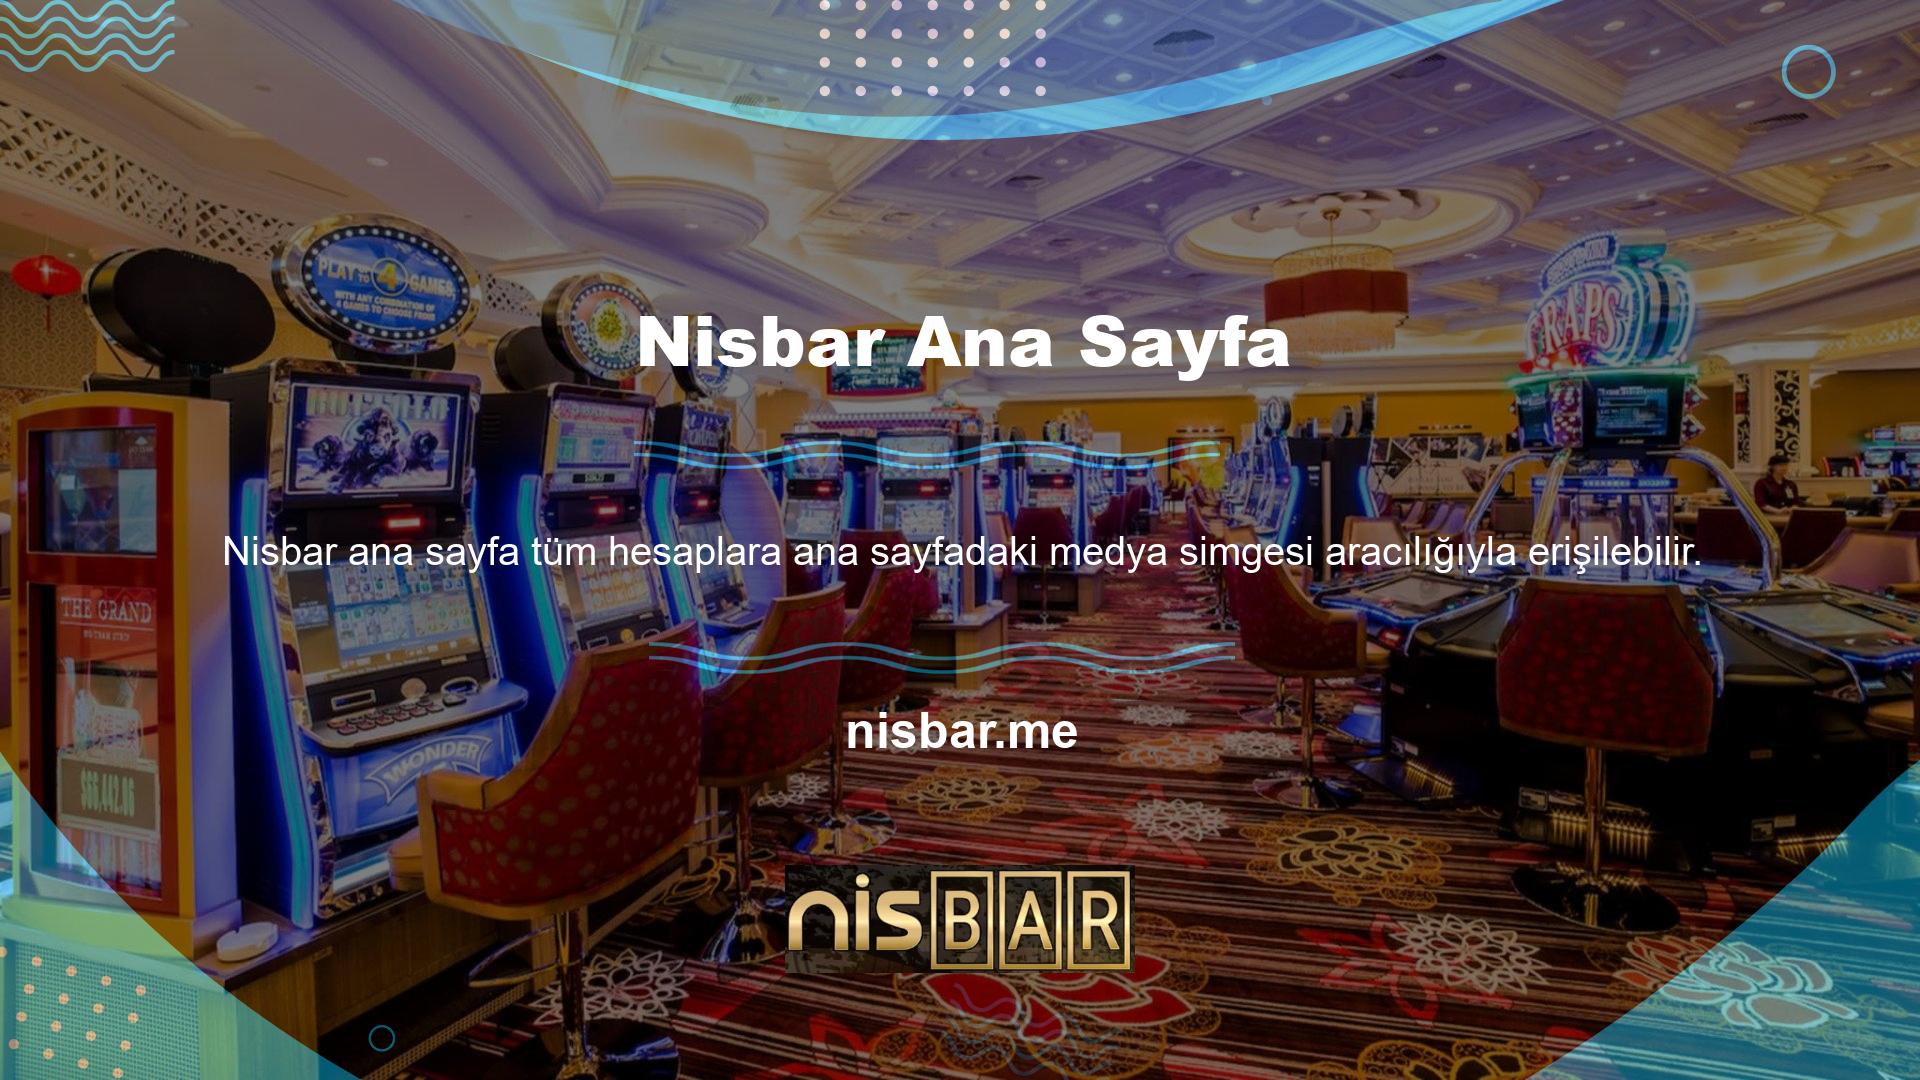 Size iyi şanslar ve bol kazançlar diliyorum! Nisbar Sosyal Medya Nisbar TV Özellikleri ve Spor Bahisleri Bahis sitelerinde en sık sorulan sorulardan biri de Nisbar TV özellikleridir